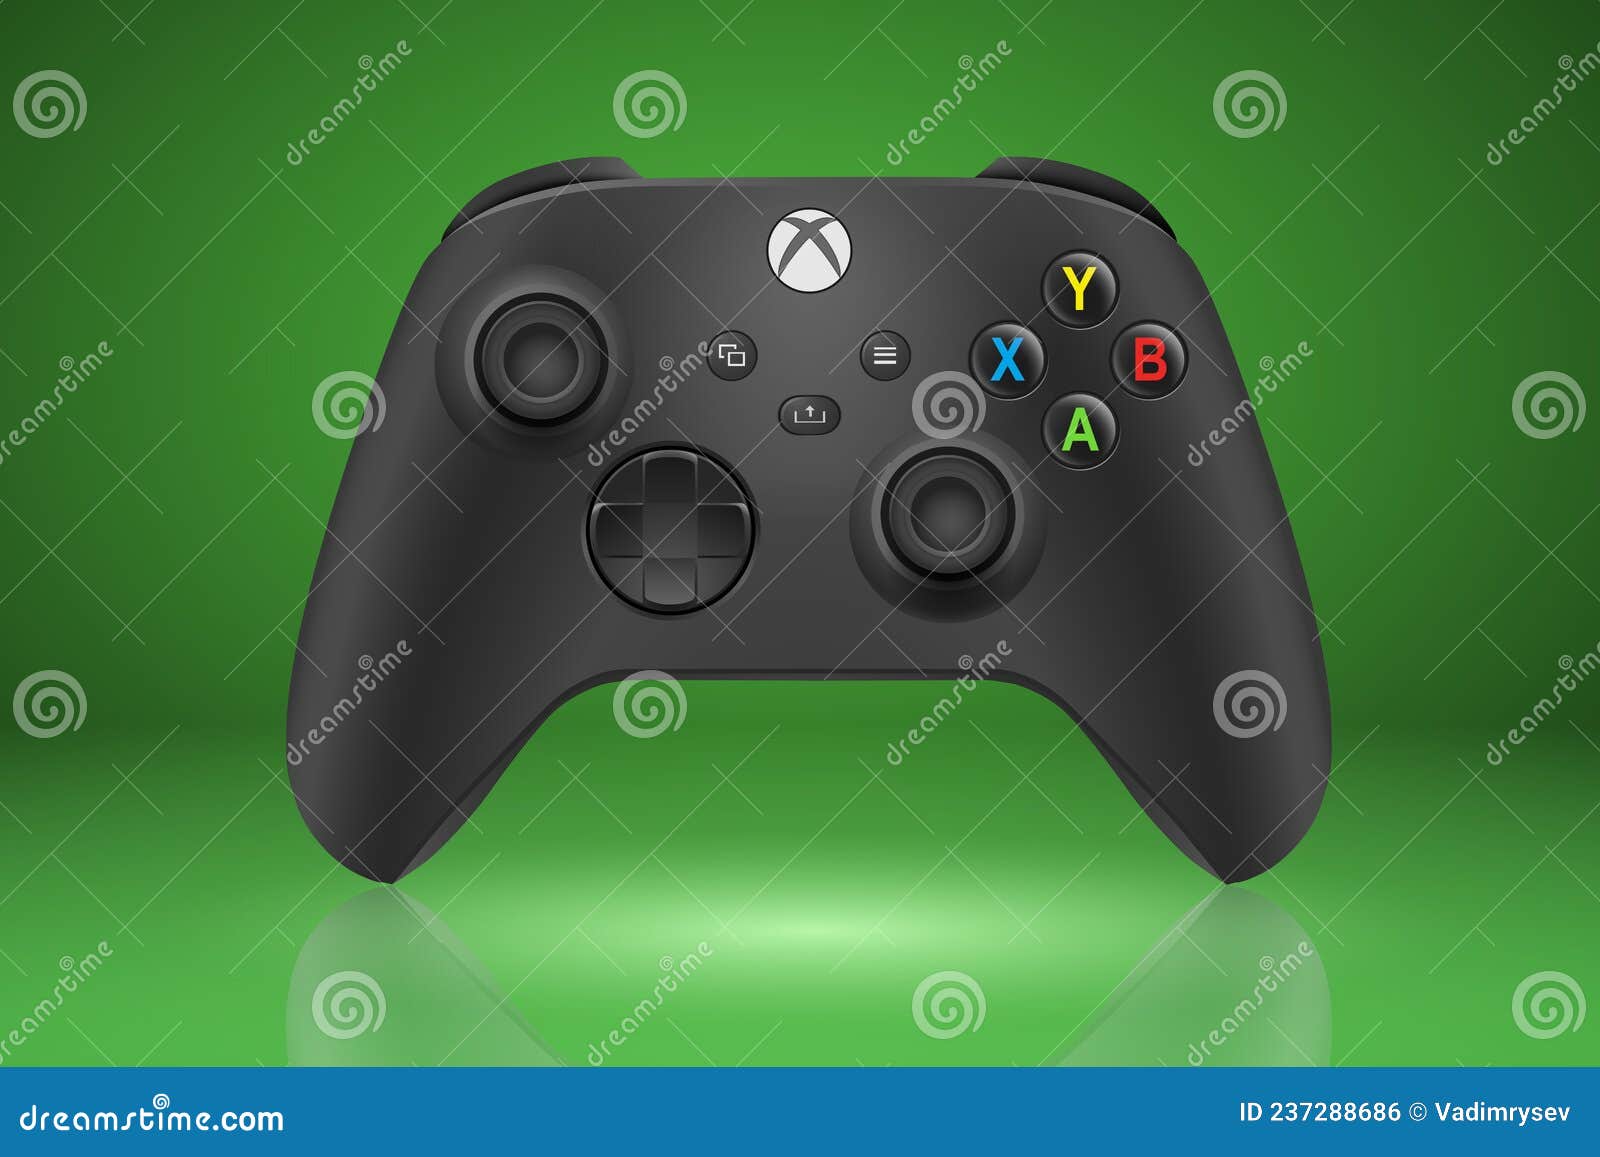 Xbox Series X là một trong những phiên bản cập nhật mới nhất của hệ thống Xbox. Xem hình ảnh để thấy vẻ đẹp và cập nhật kỹ thuật của nó.